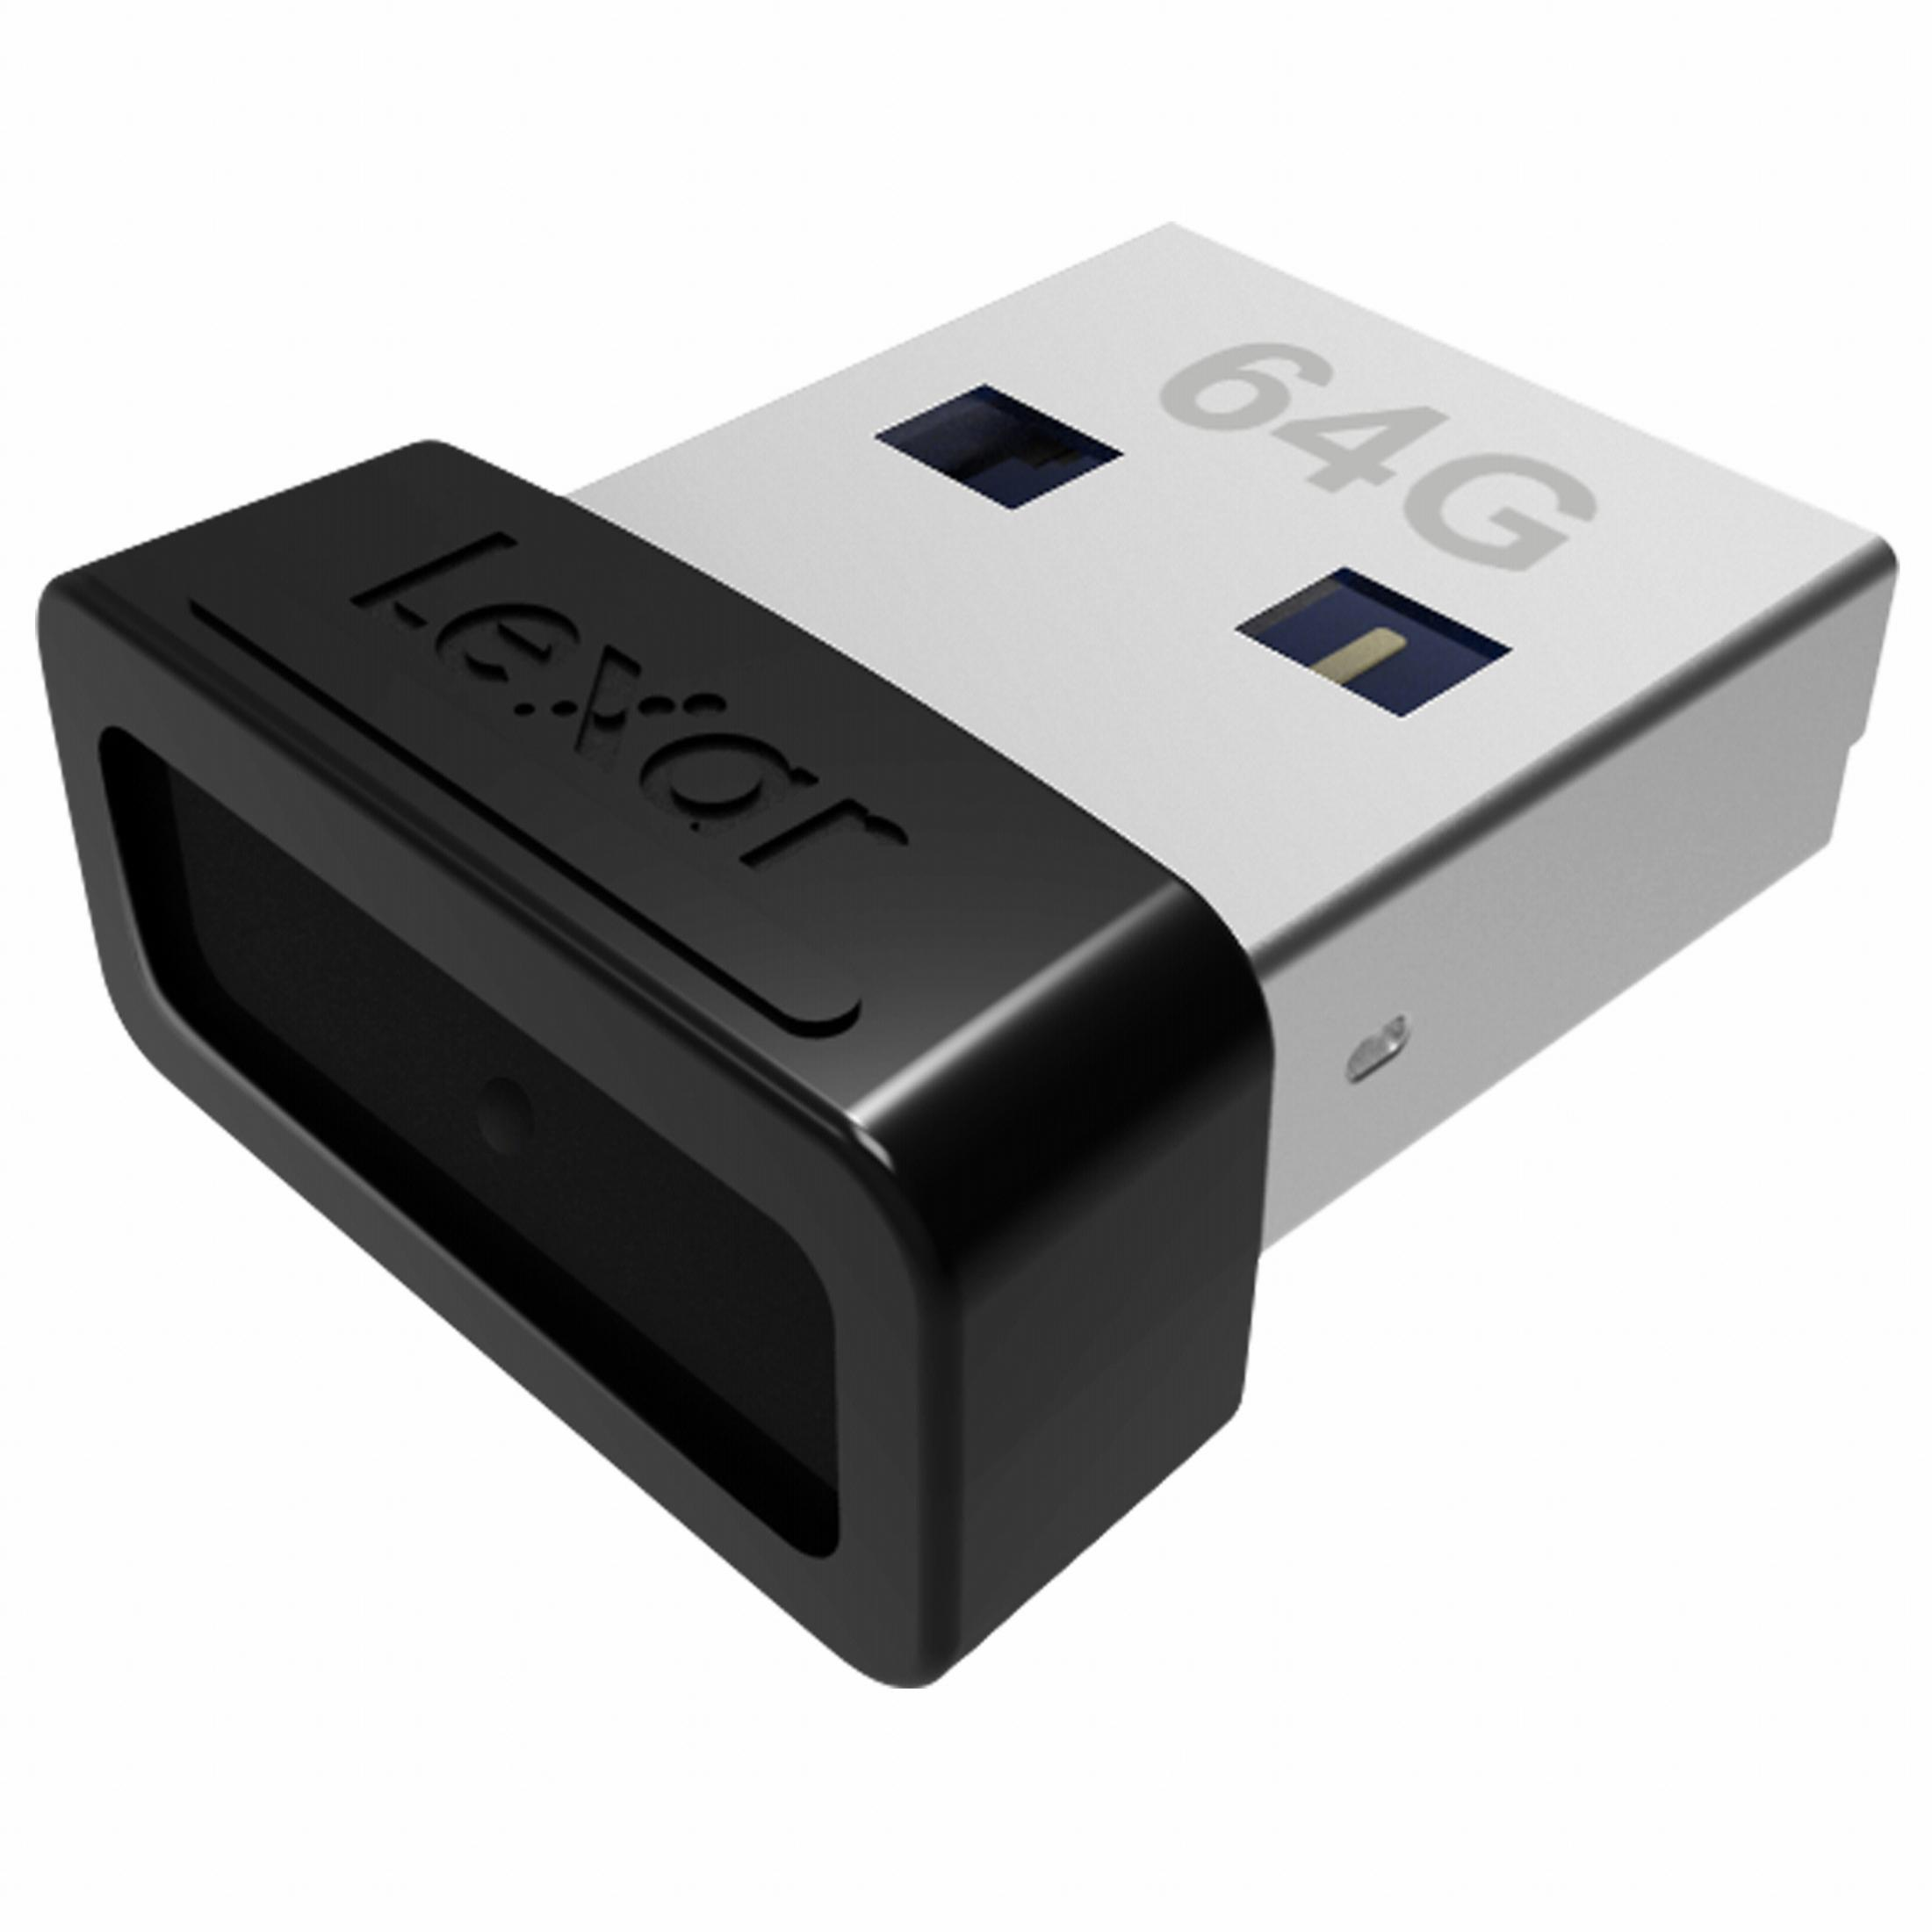 LEXAR (Schwarz, GB) 64GB JUMPDRIVE USB S47 LJDS47-64GABBK 64 USB-Stick 3.1